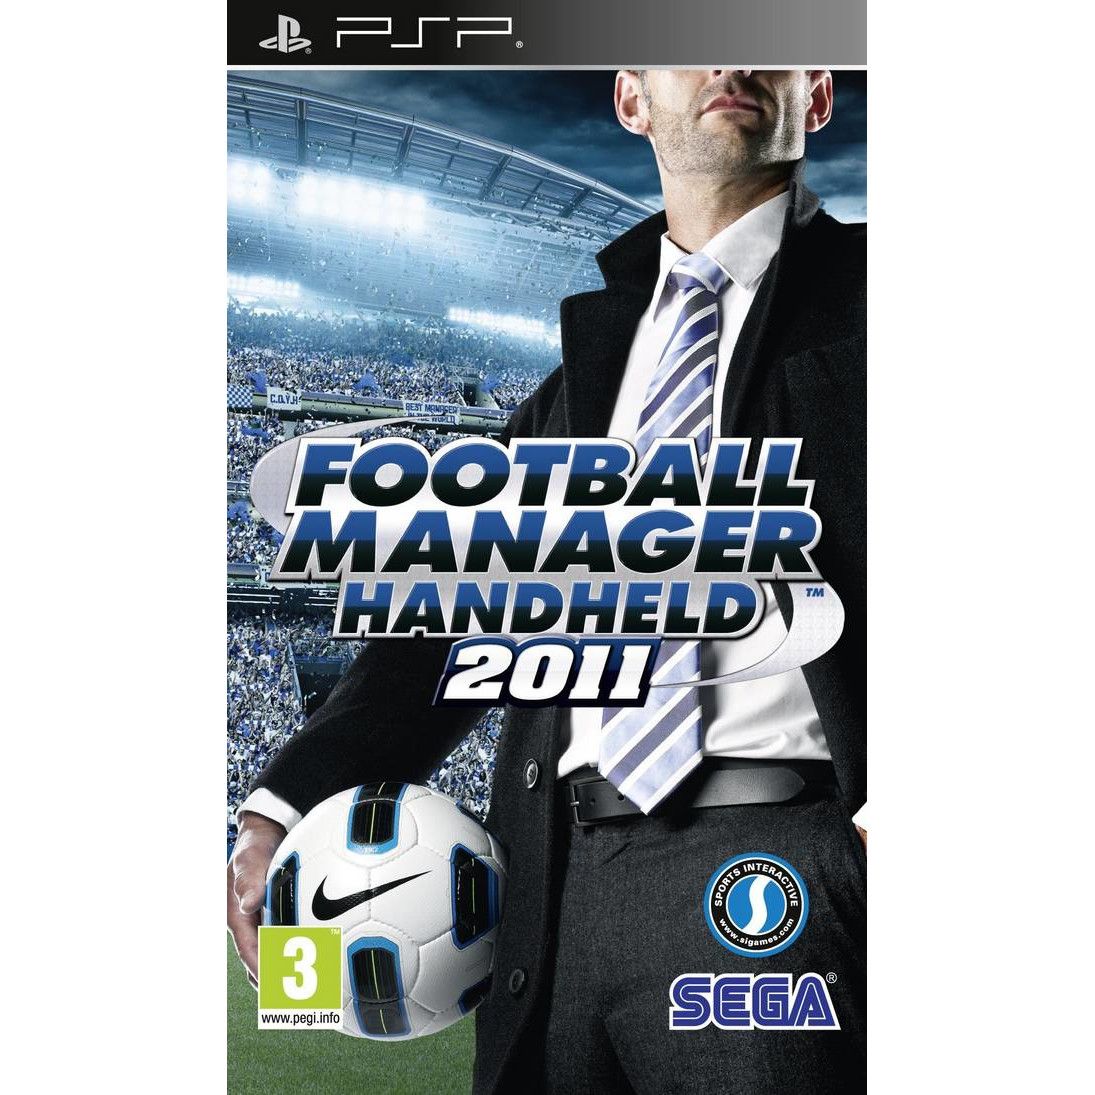 Football Manager Hndheld 2011 - PSP Játékok